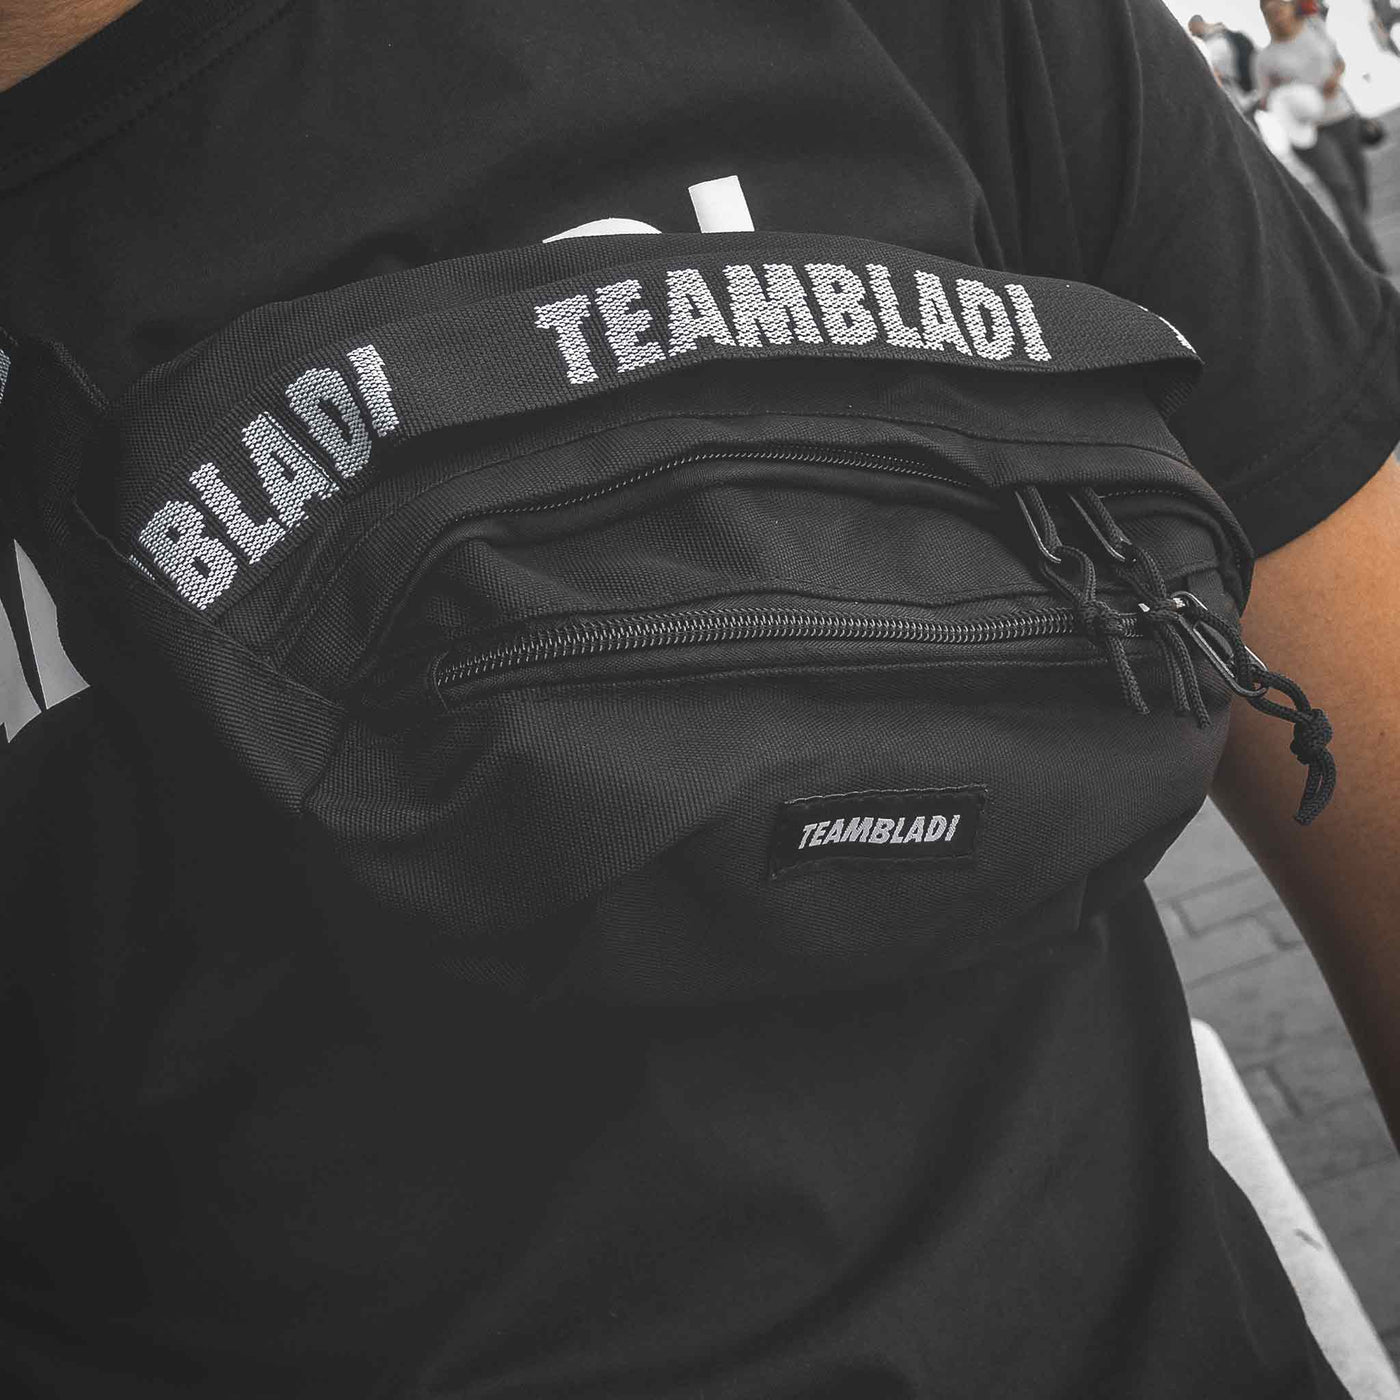 Teambladi Waist-Bag Black